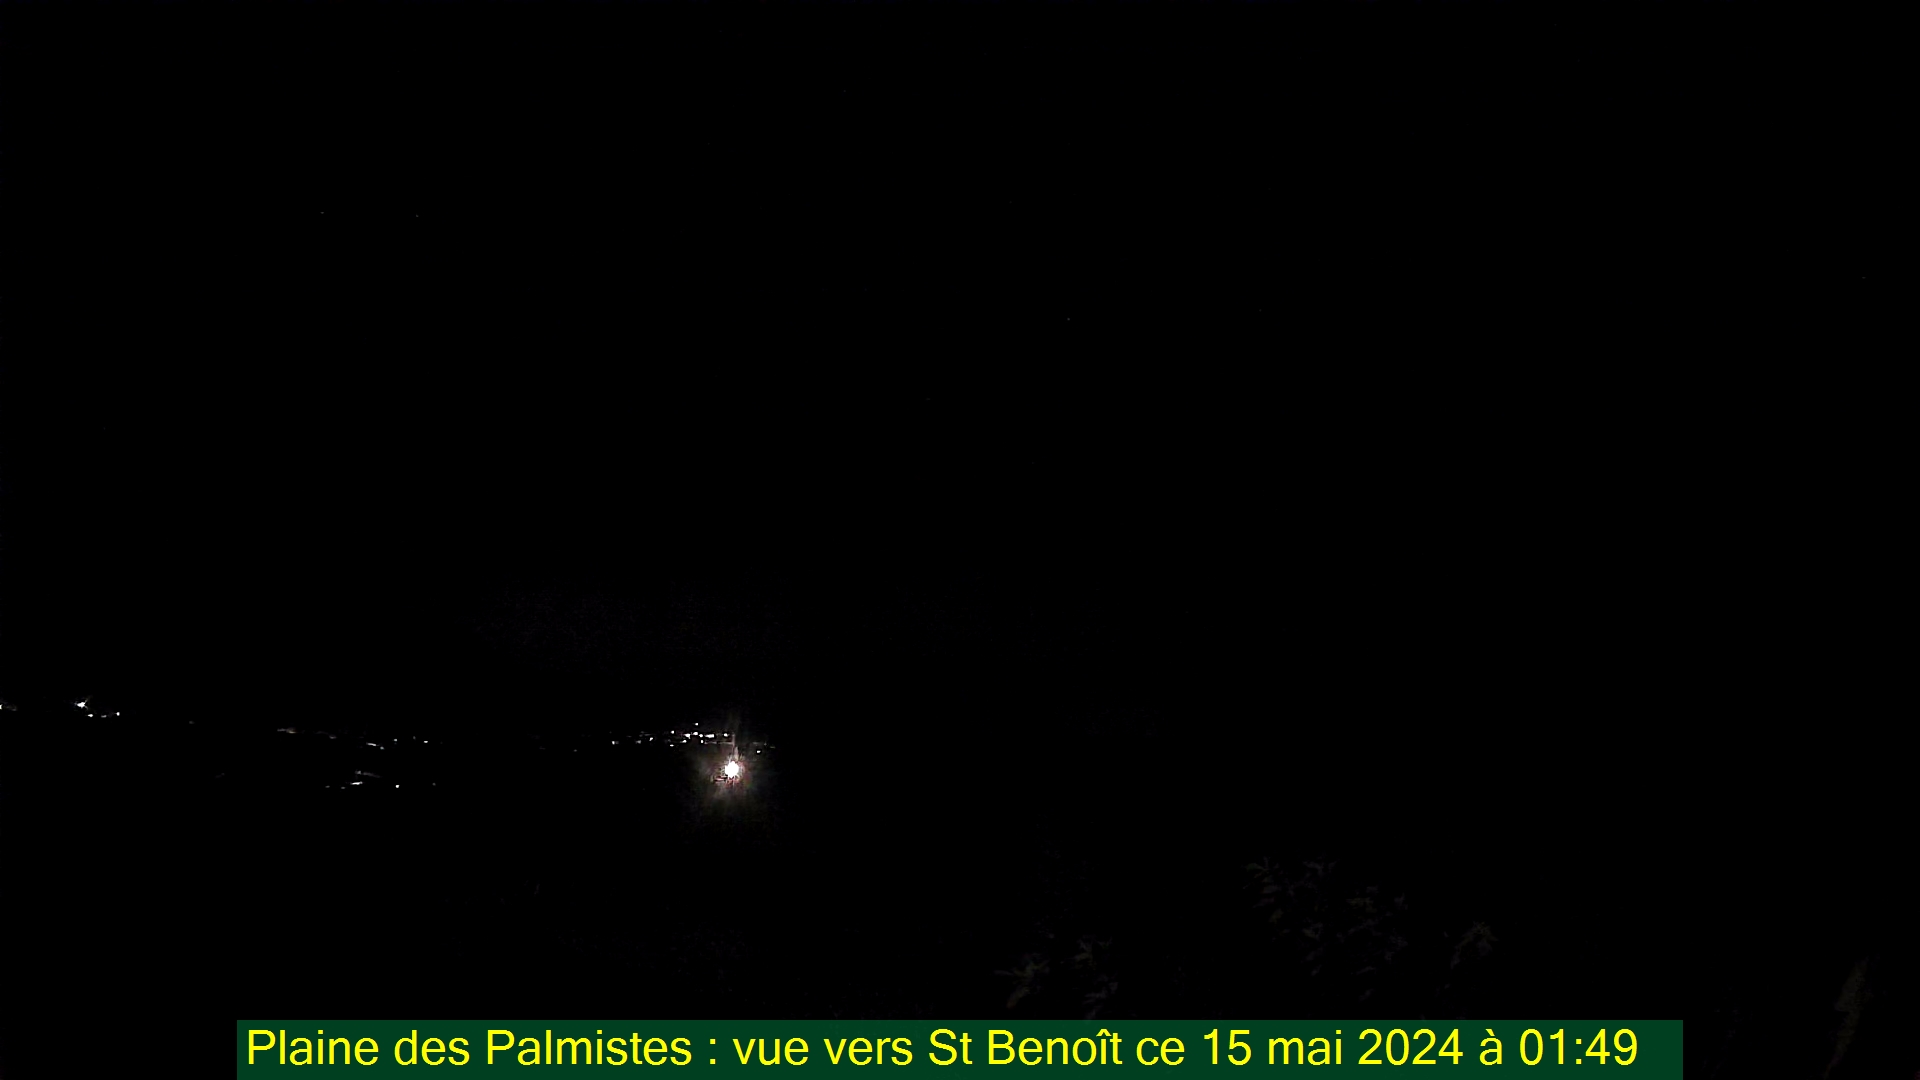 Saint-Denis (Réunion) Fr. 01:50